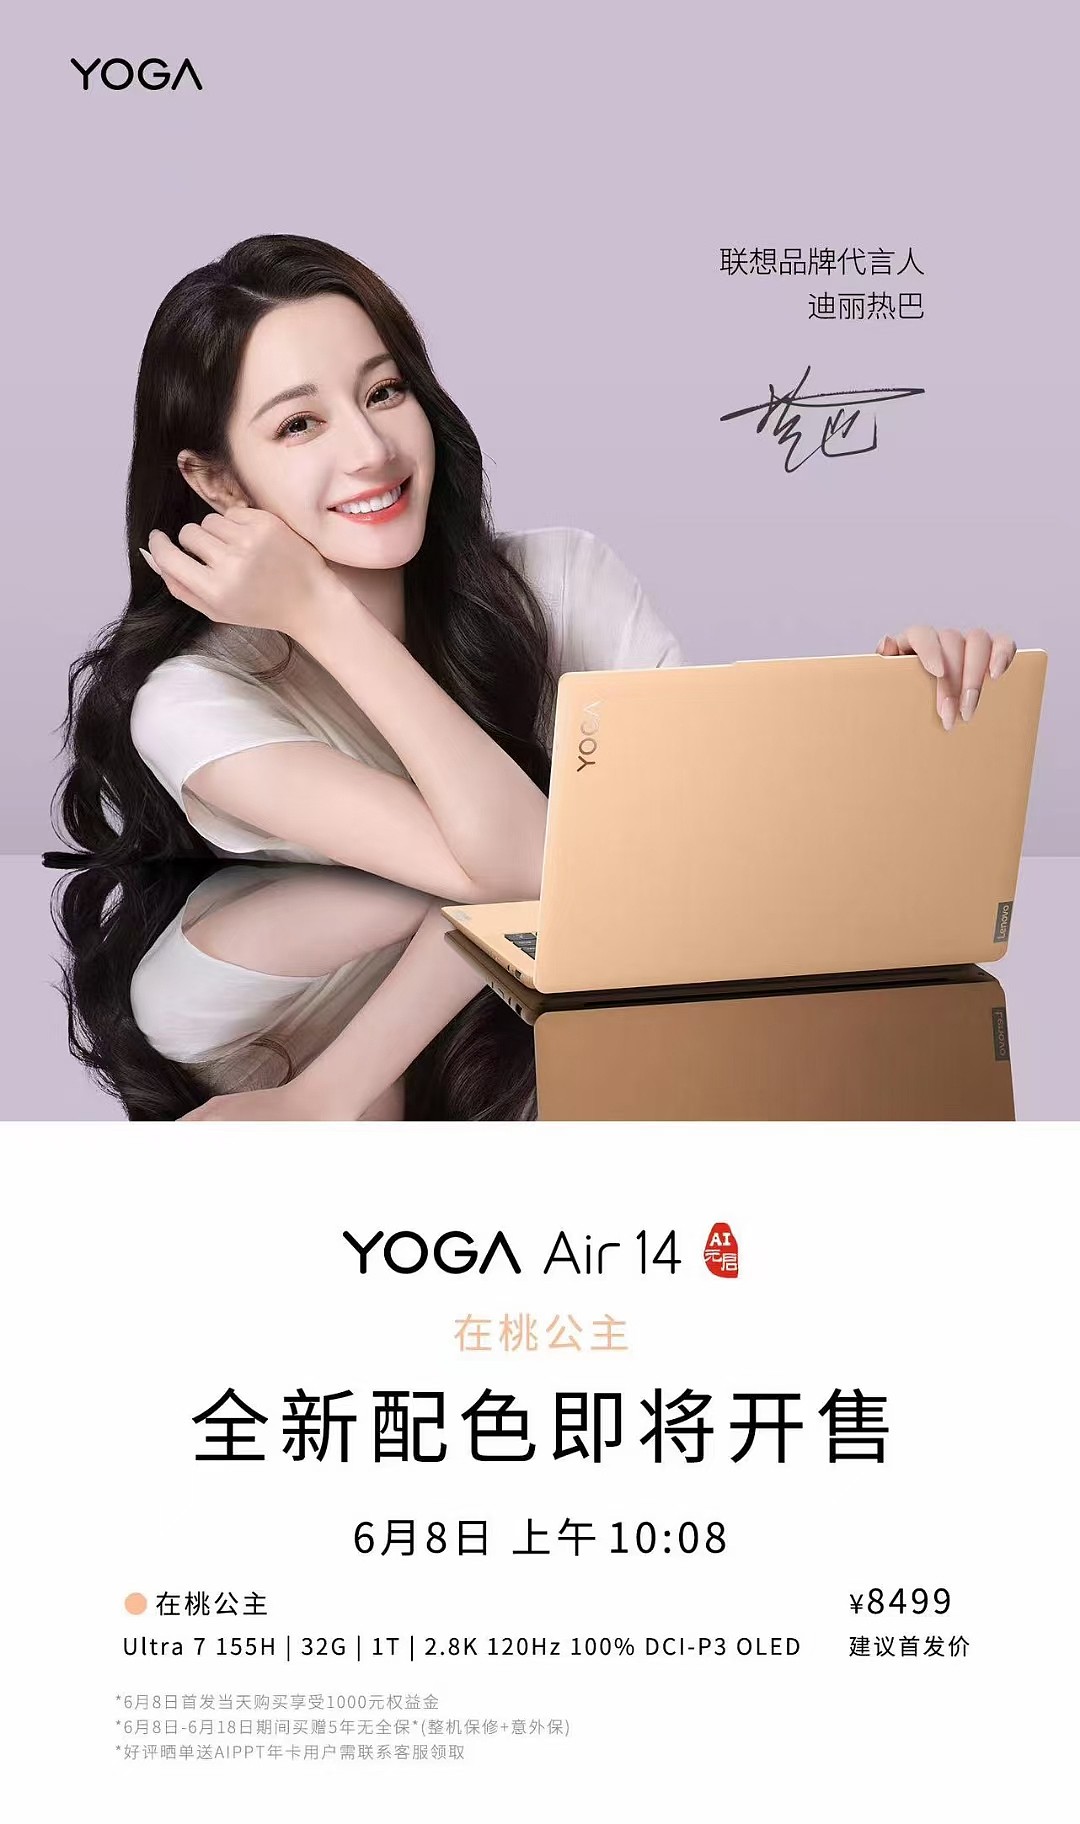 8499 元：联想 YOGA Air 14 新增“在桃公主”配色，6 月 8 日开售 - 1